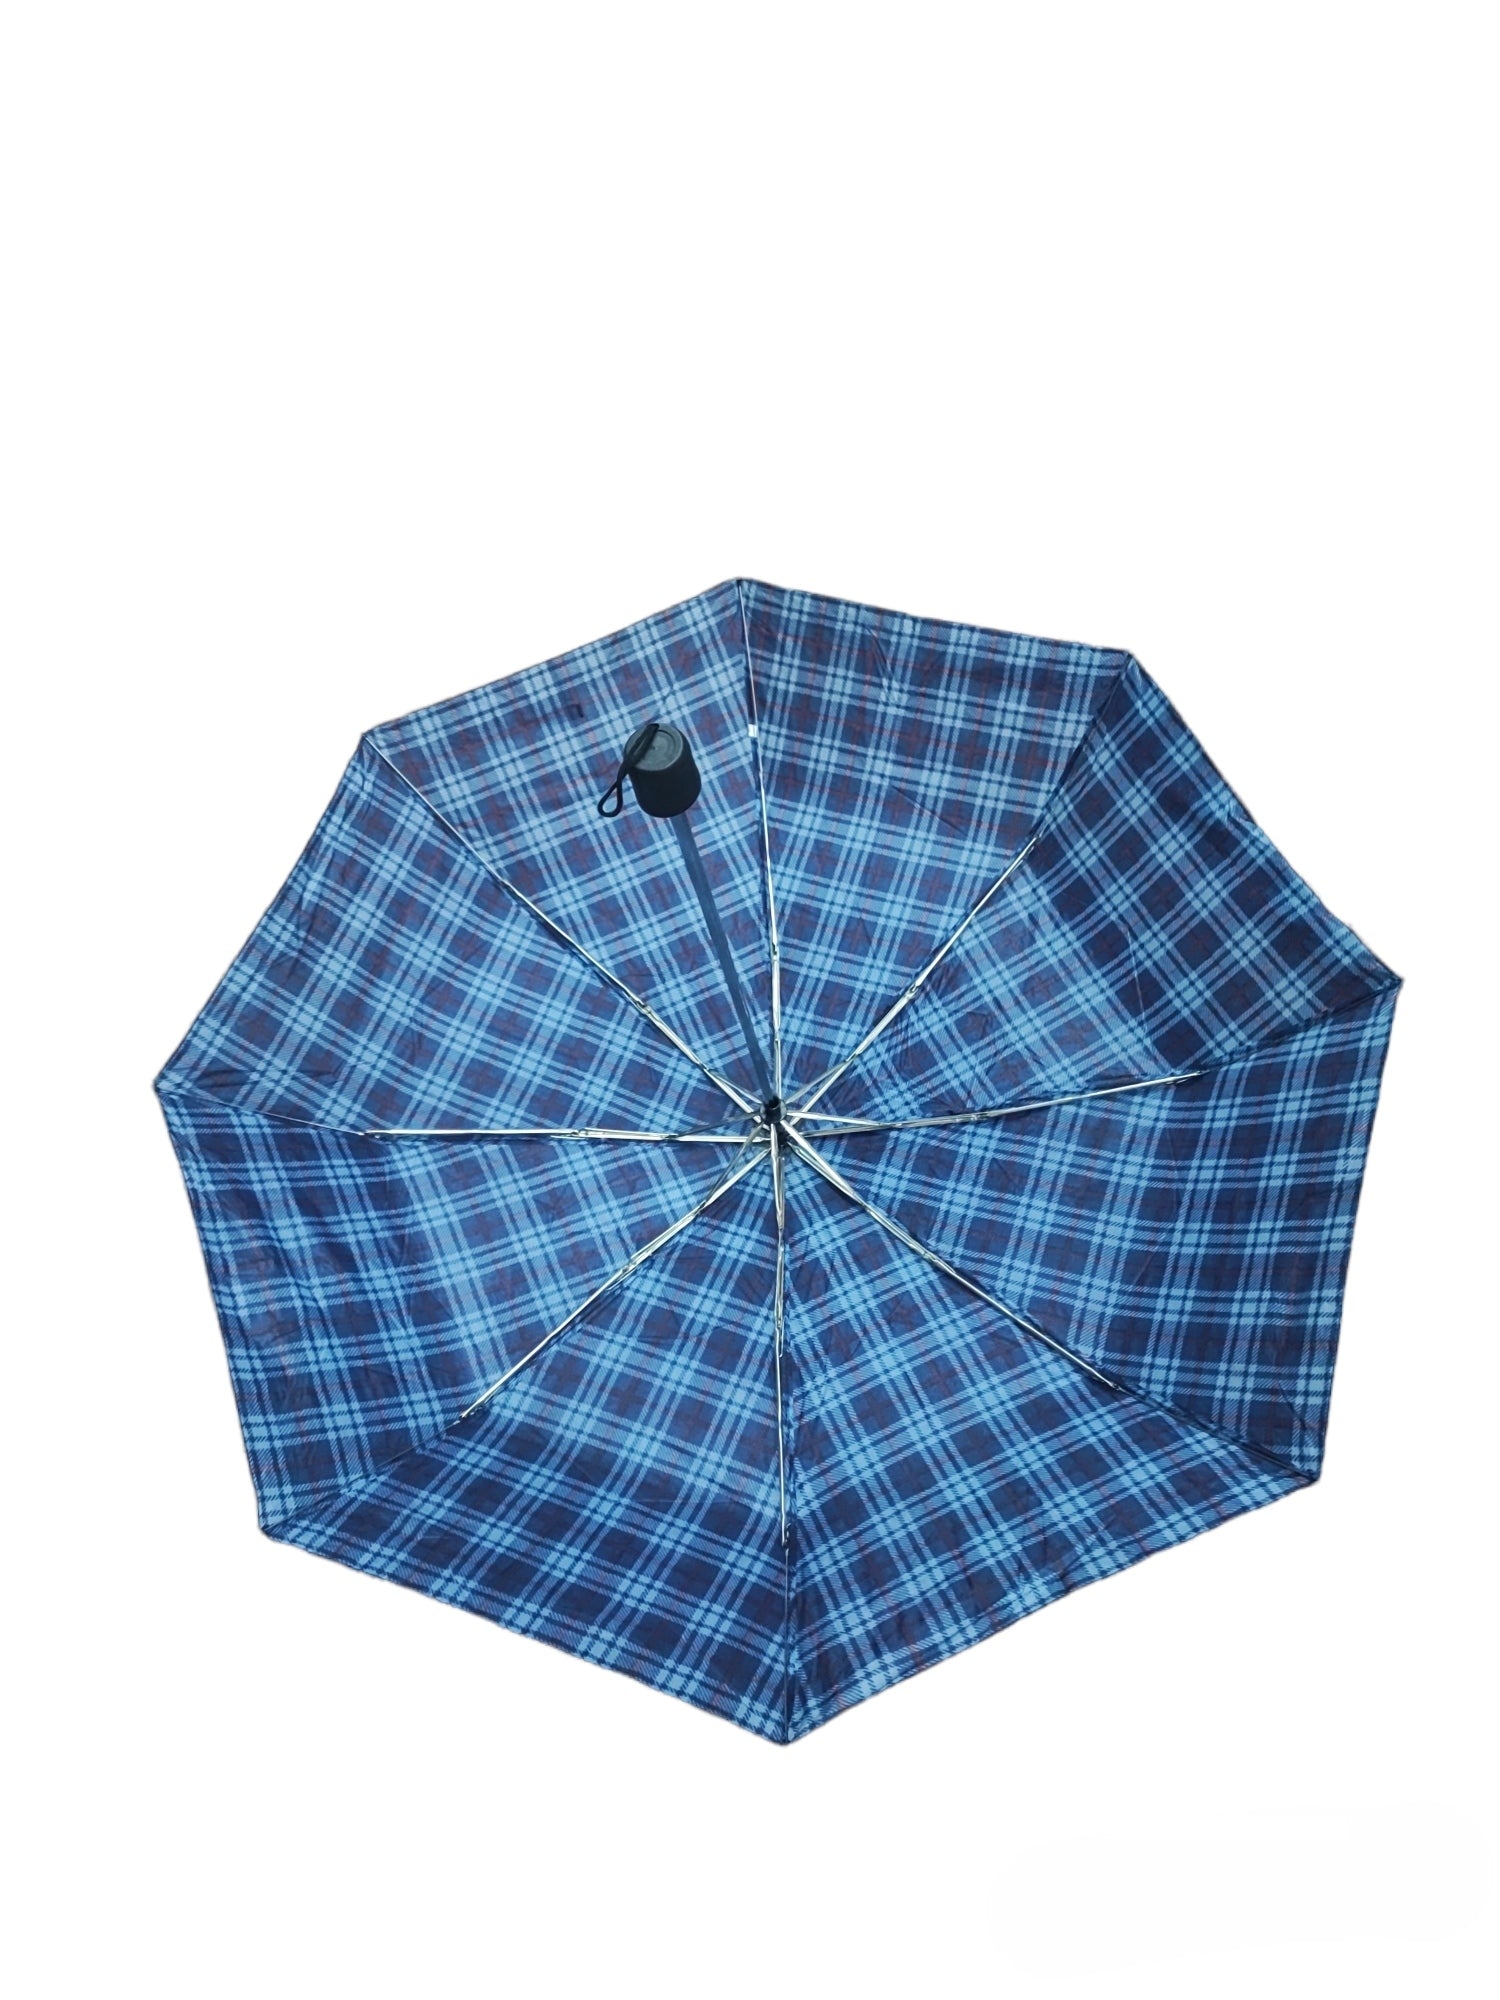 Parapluie motif carreaux tartan (x36)